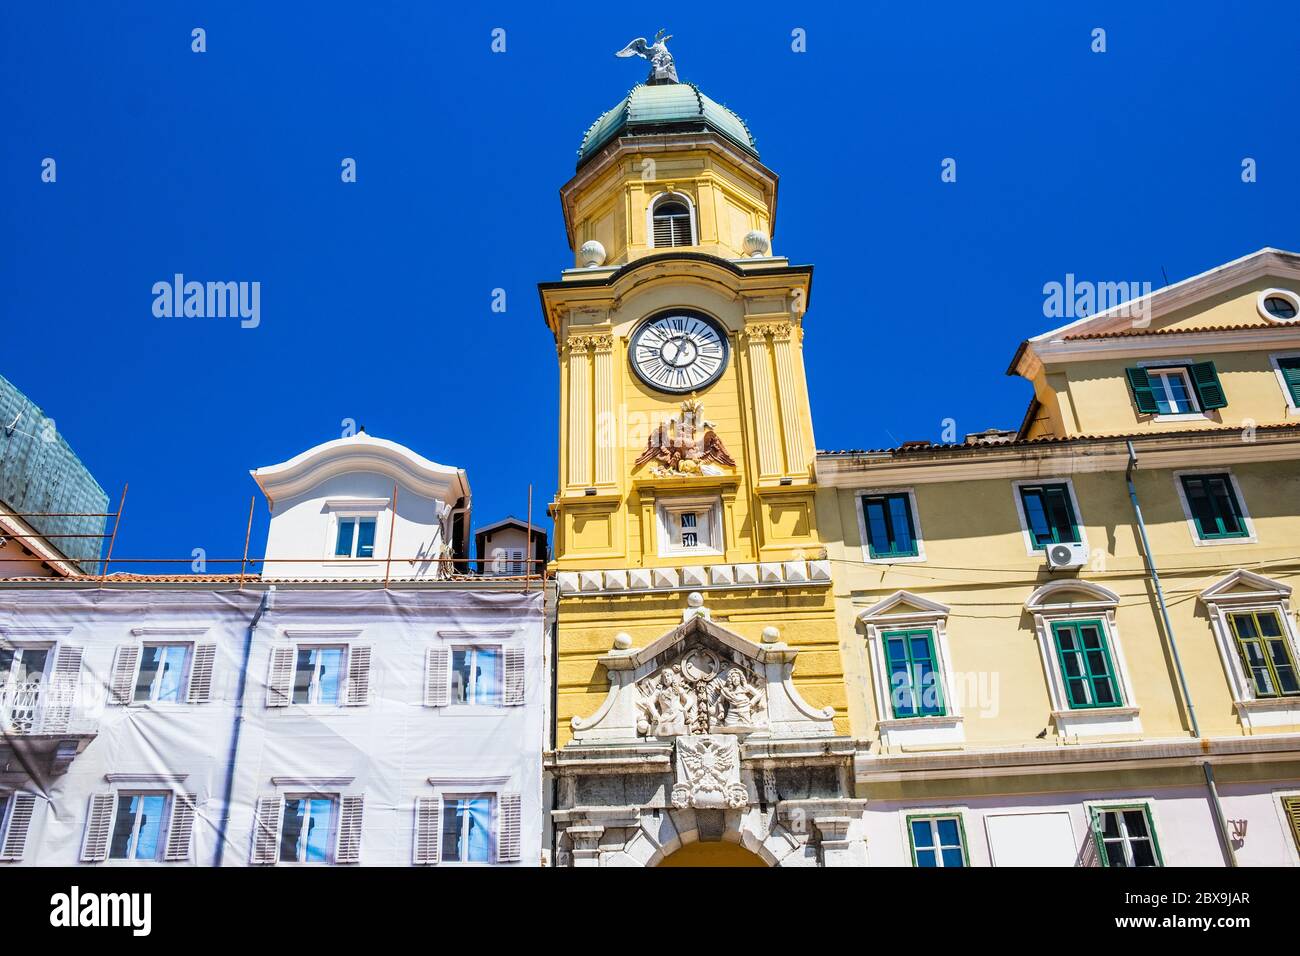 City of Rijeka, Croatia. Baroque city clock tower on a sunny summer day. Stock Photo